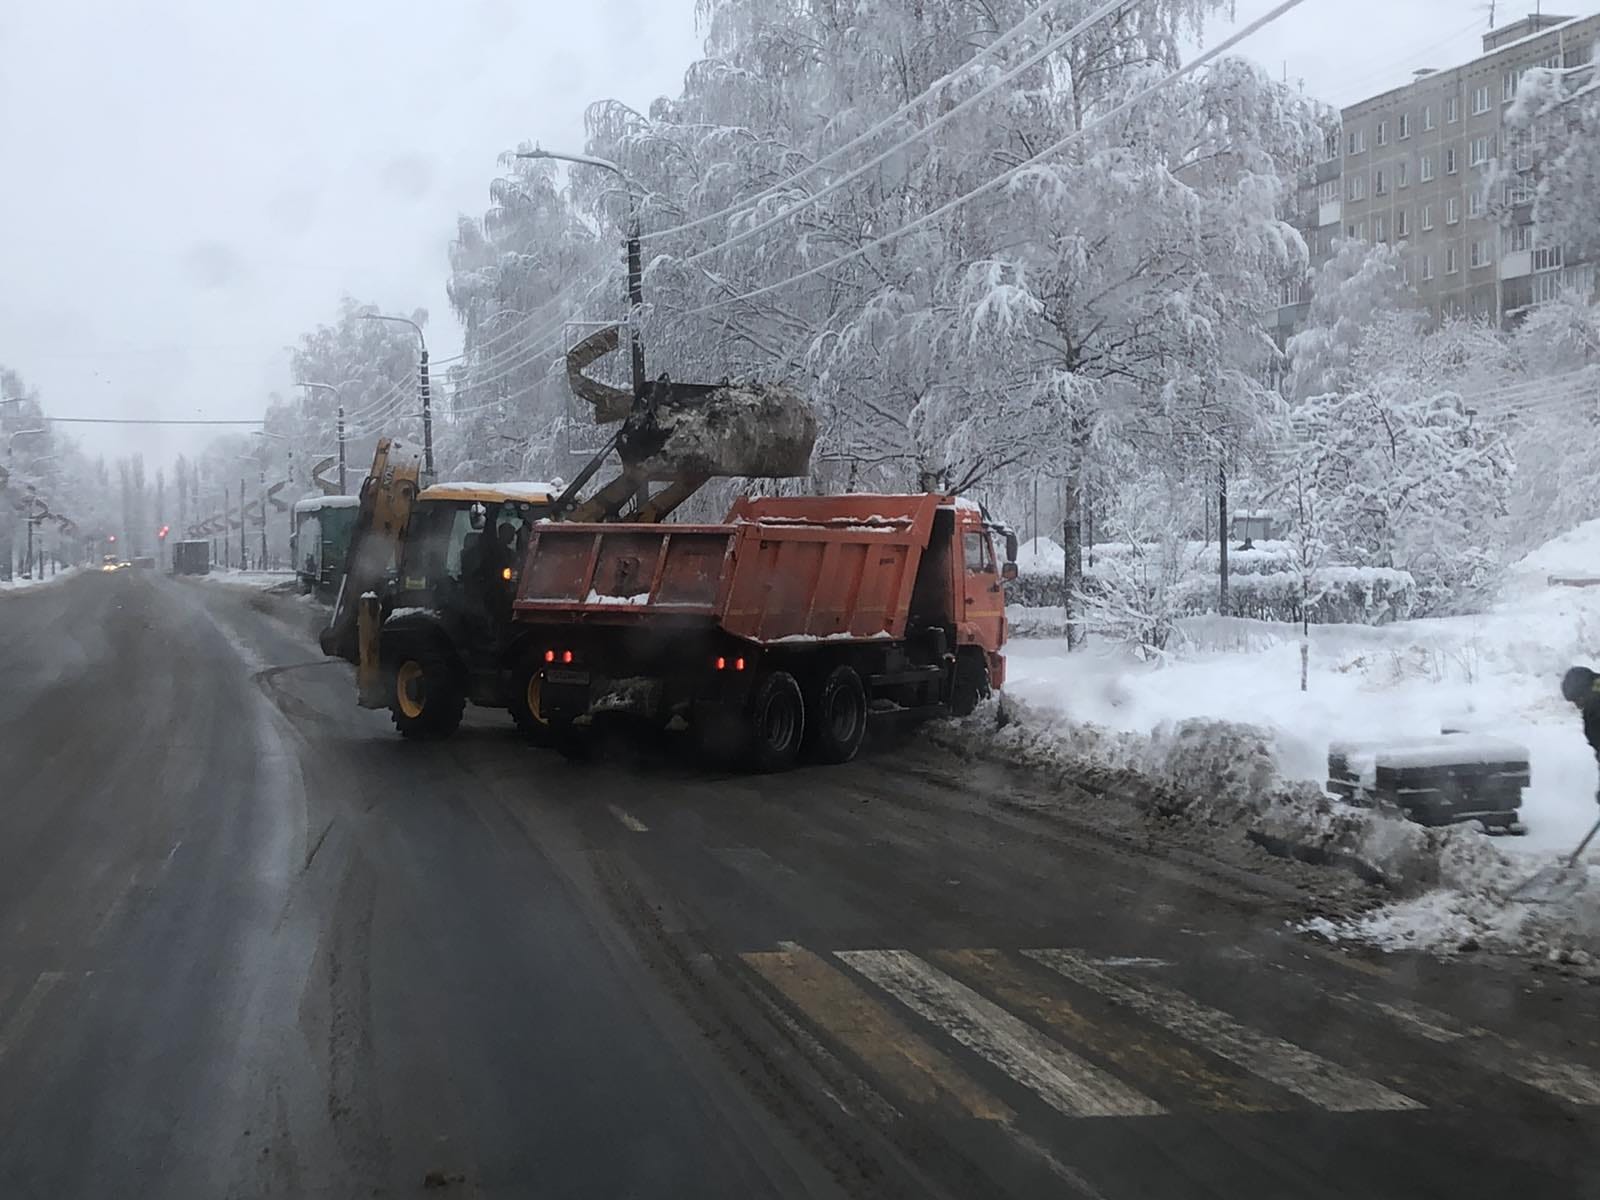 Мэрия Нижнего Новгорода закупит 83 снегоуборочные машины до конца года  - фото 1